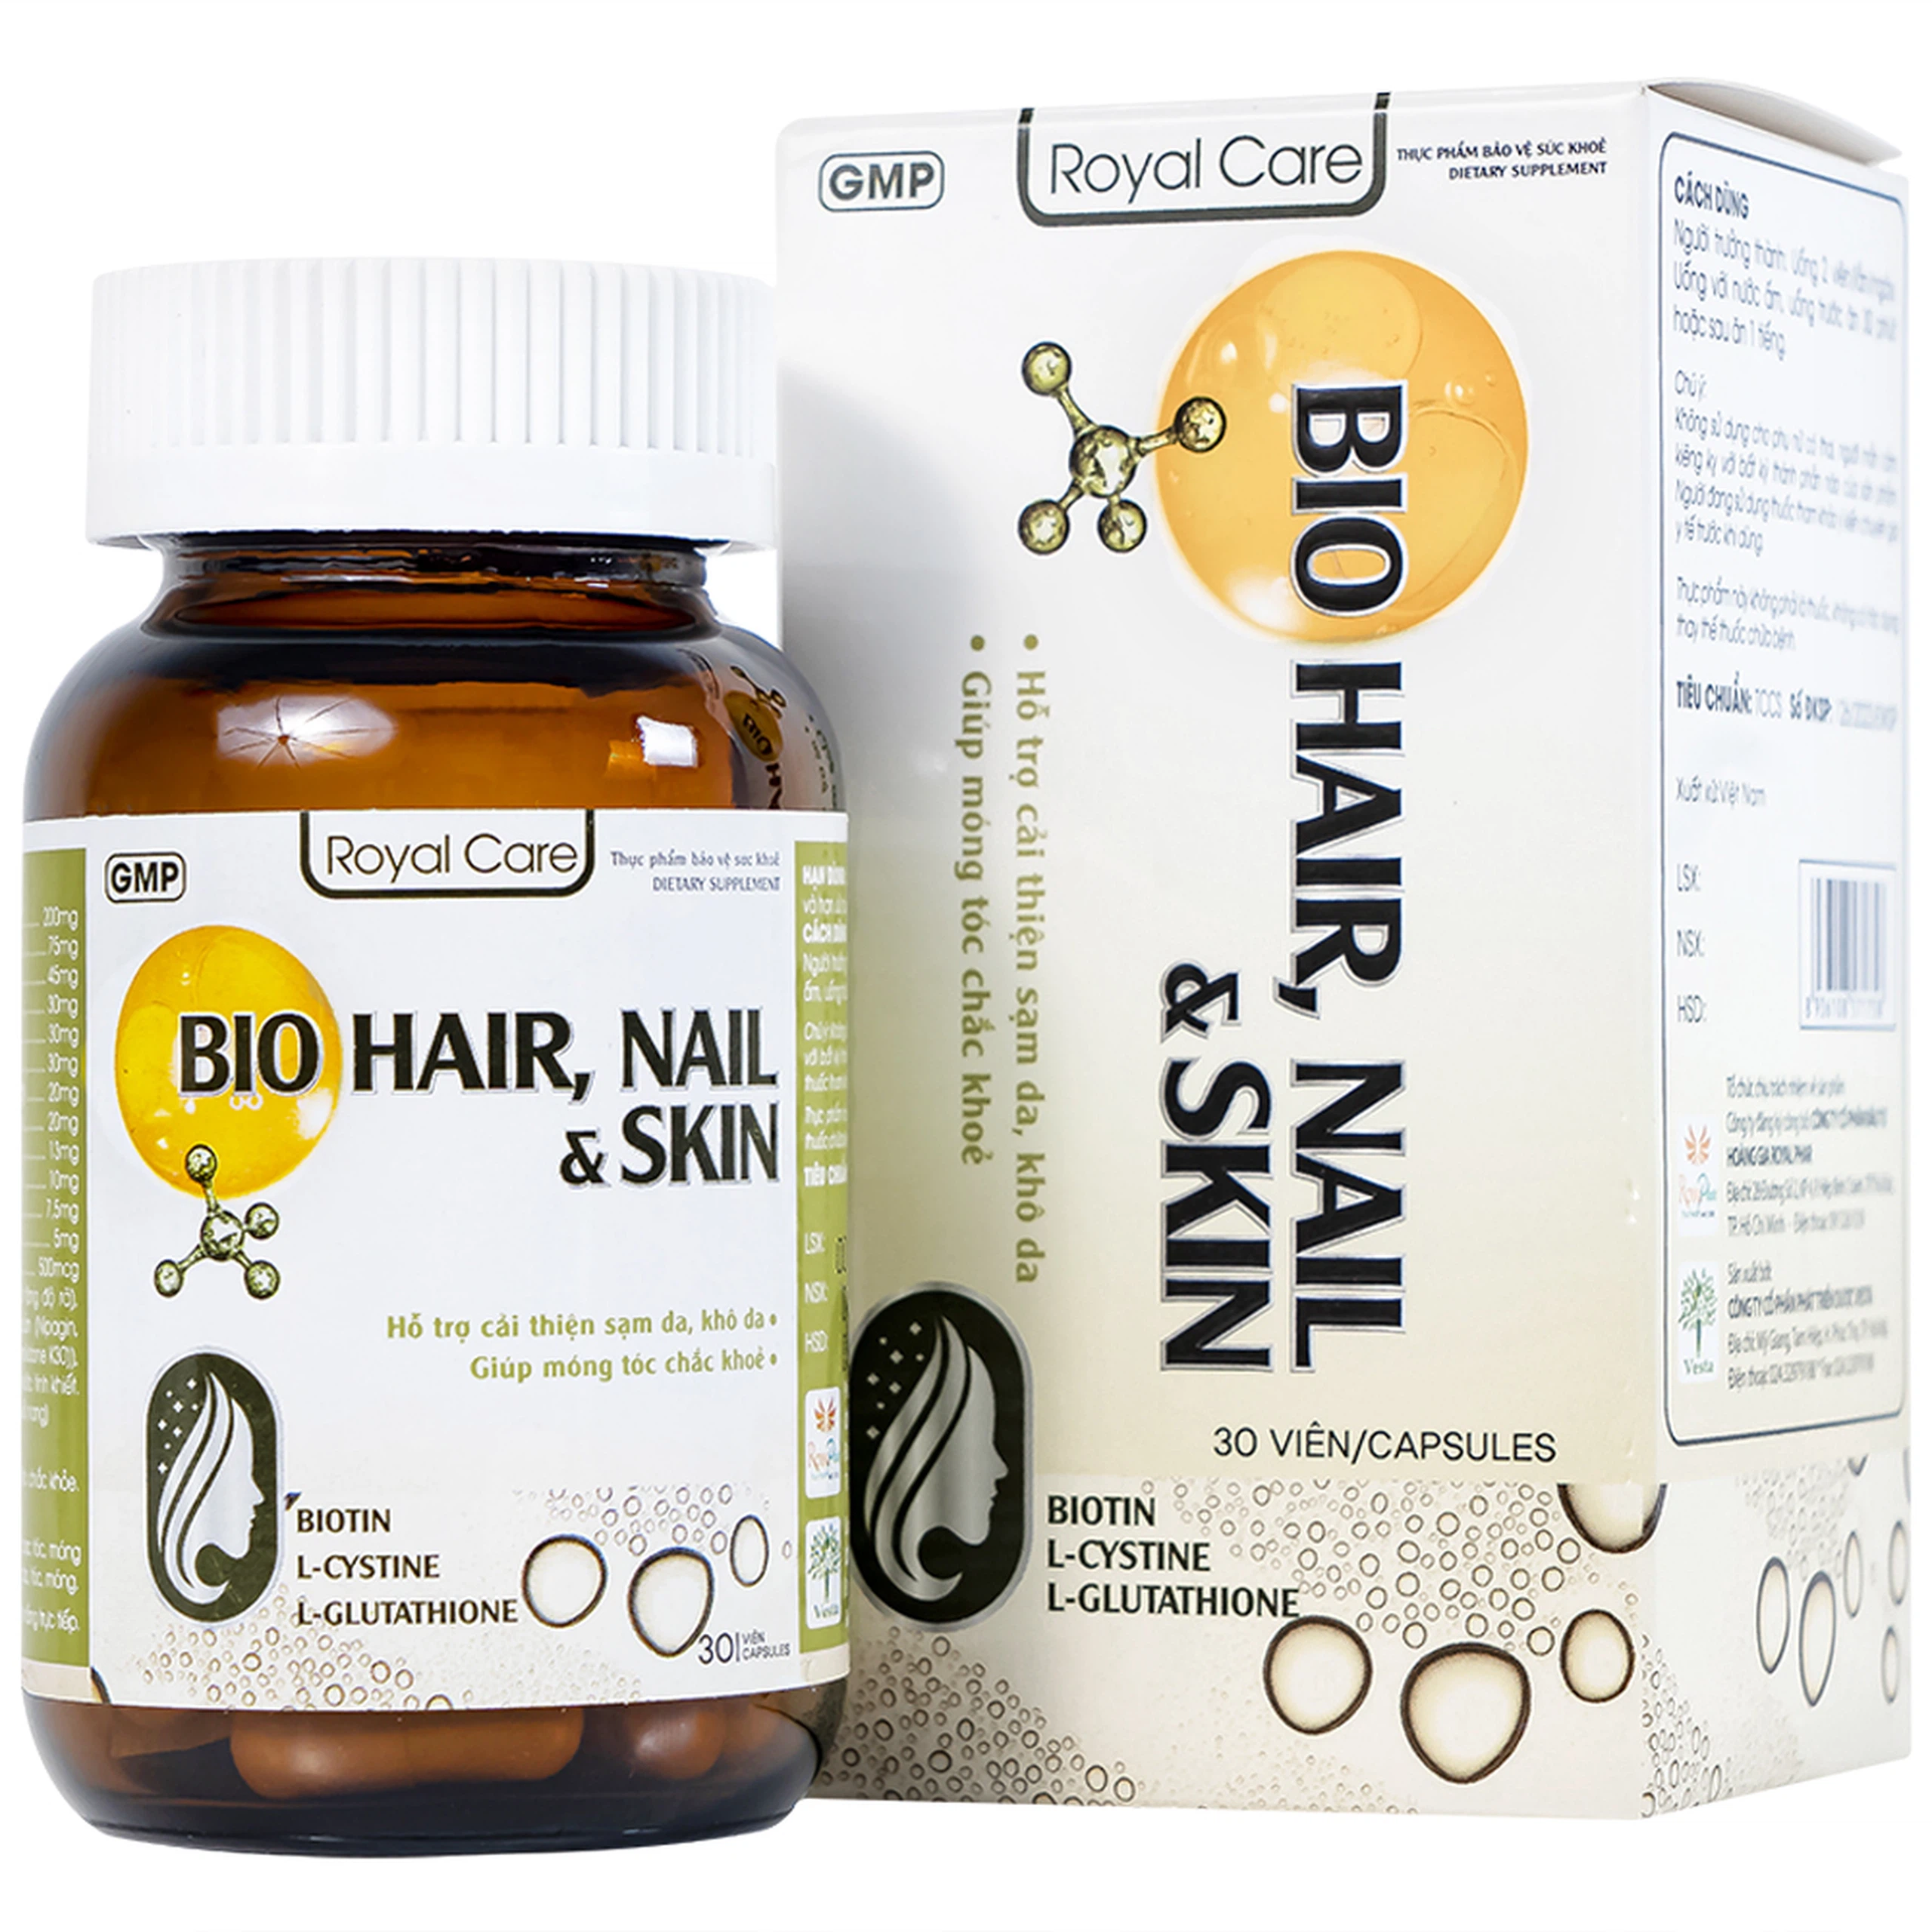 Viên uống BIO Hair, Nail & Skin Royal Care hỗ trợ cải thiện sạm da, khô da, giúp móng tóc chắc khỏe (30 viên)